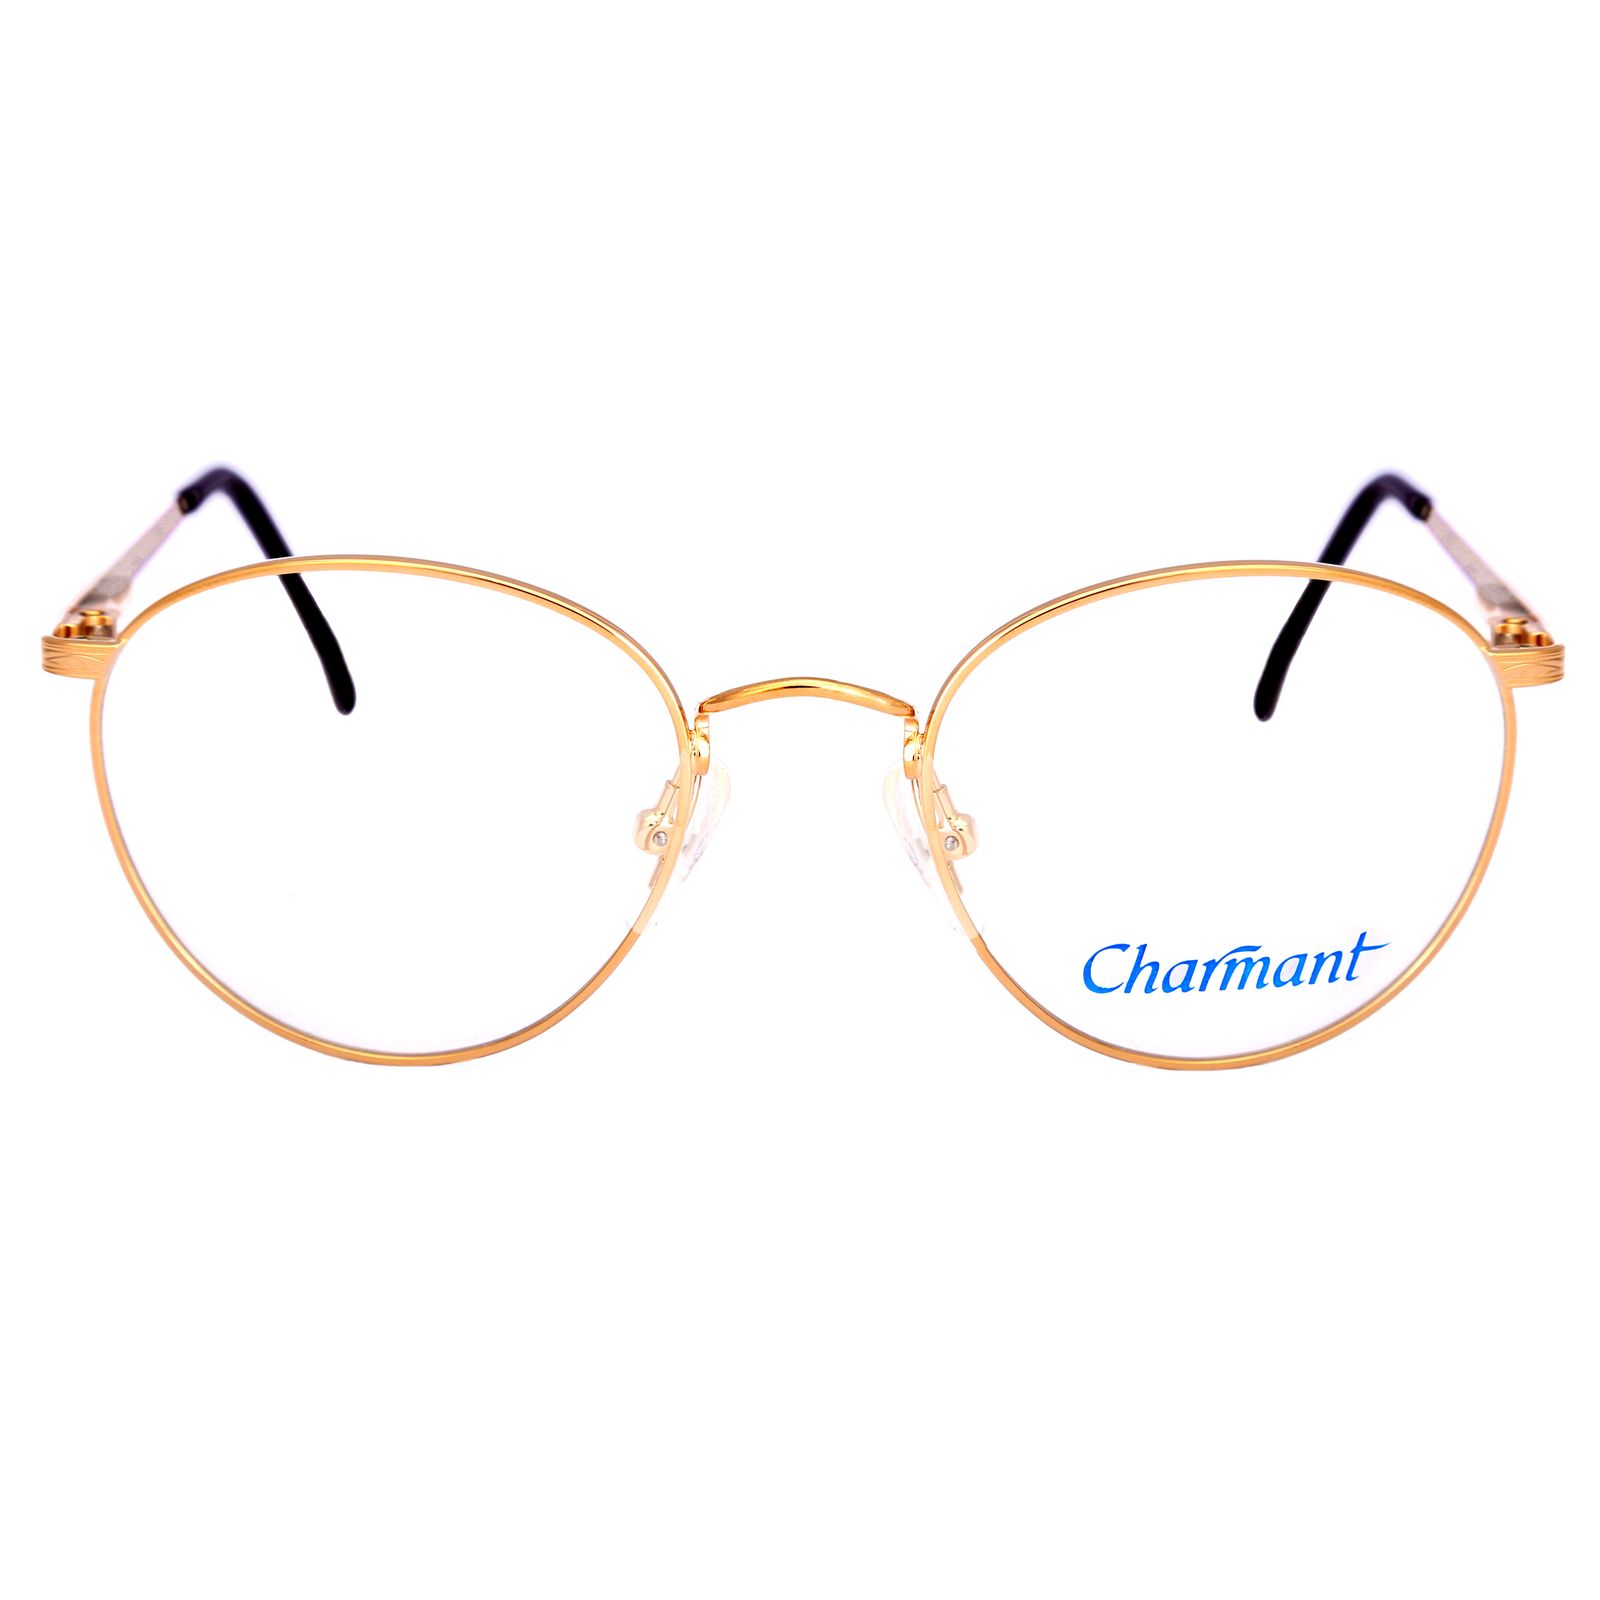 فریم عینک طبی چارمنت مدل 4247 -  - 6